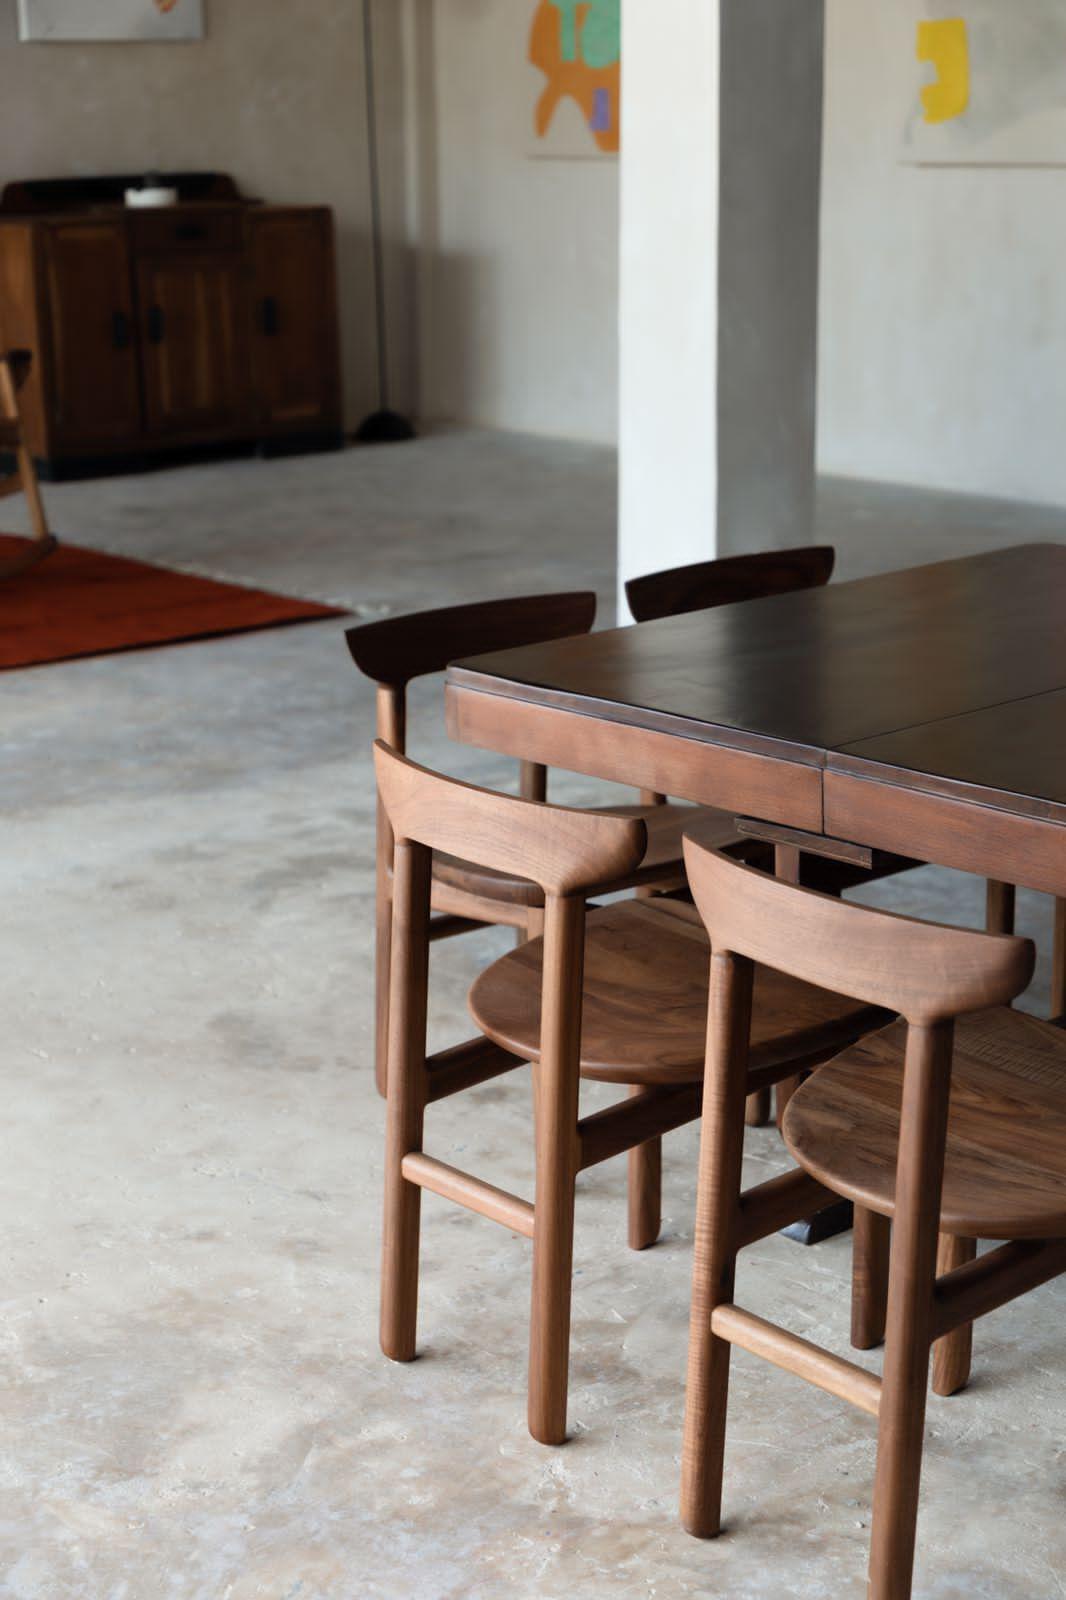 Das Design des Muna Chair basiert auf sanften Linien und abgerundeten Kanten, mit einer soliden und dennoch leichten Konstruktion, die die Fugen des Holzes mit den Techniken der traditionellen Tischlerei hervorhebt. Eine ehrliche und einfache